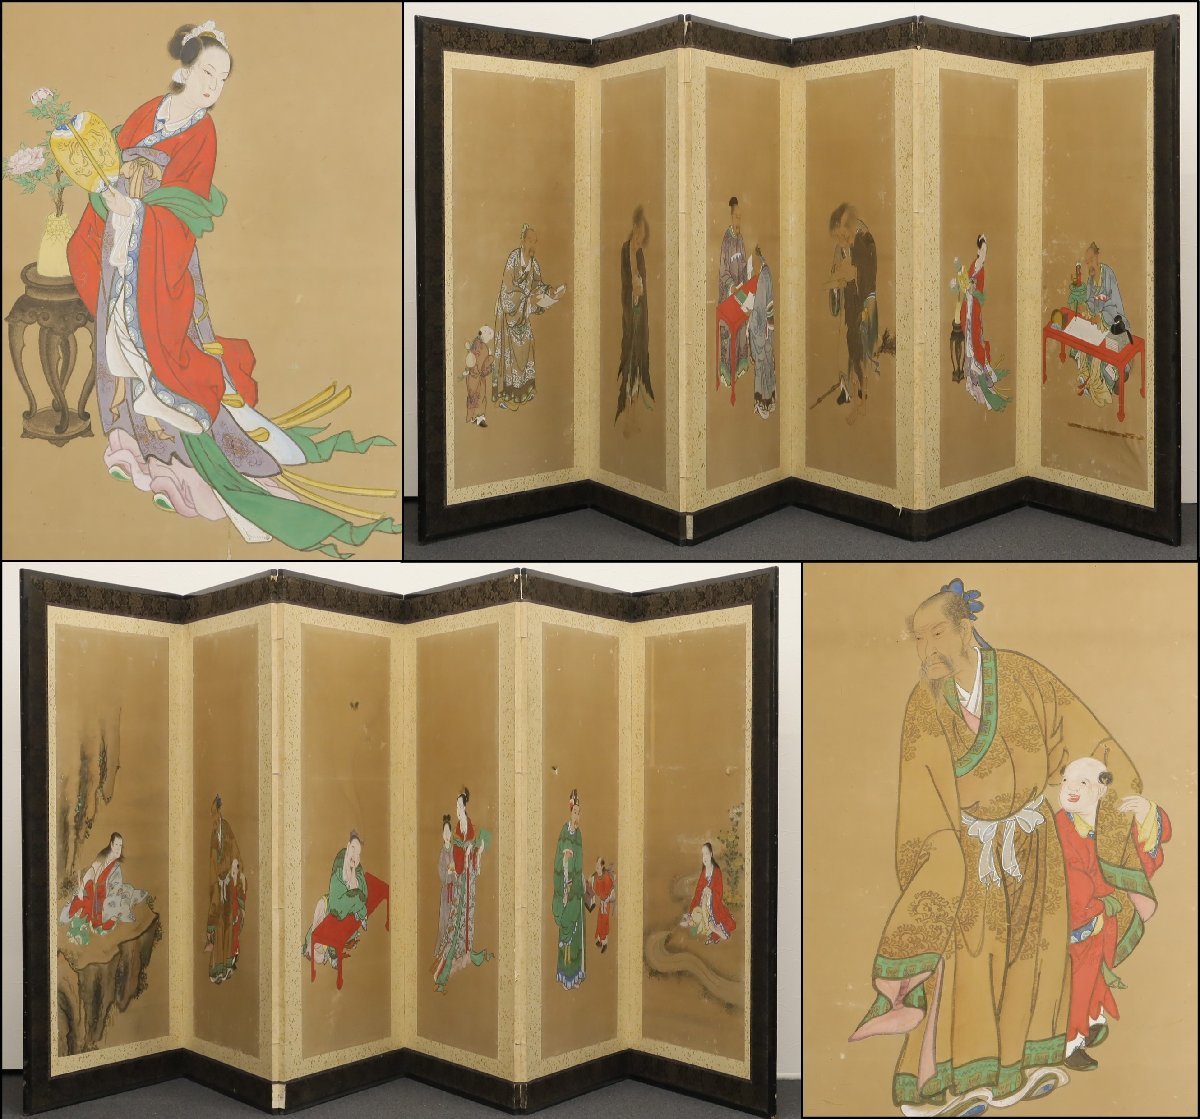 时代：六曲折叠屏, 南书画, 纸质书, 手写, 高度约。 130厘米, 古代屏风, 未标记的, 中国文人, 中国人物画, 艺术品, 绘画, 肖像